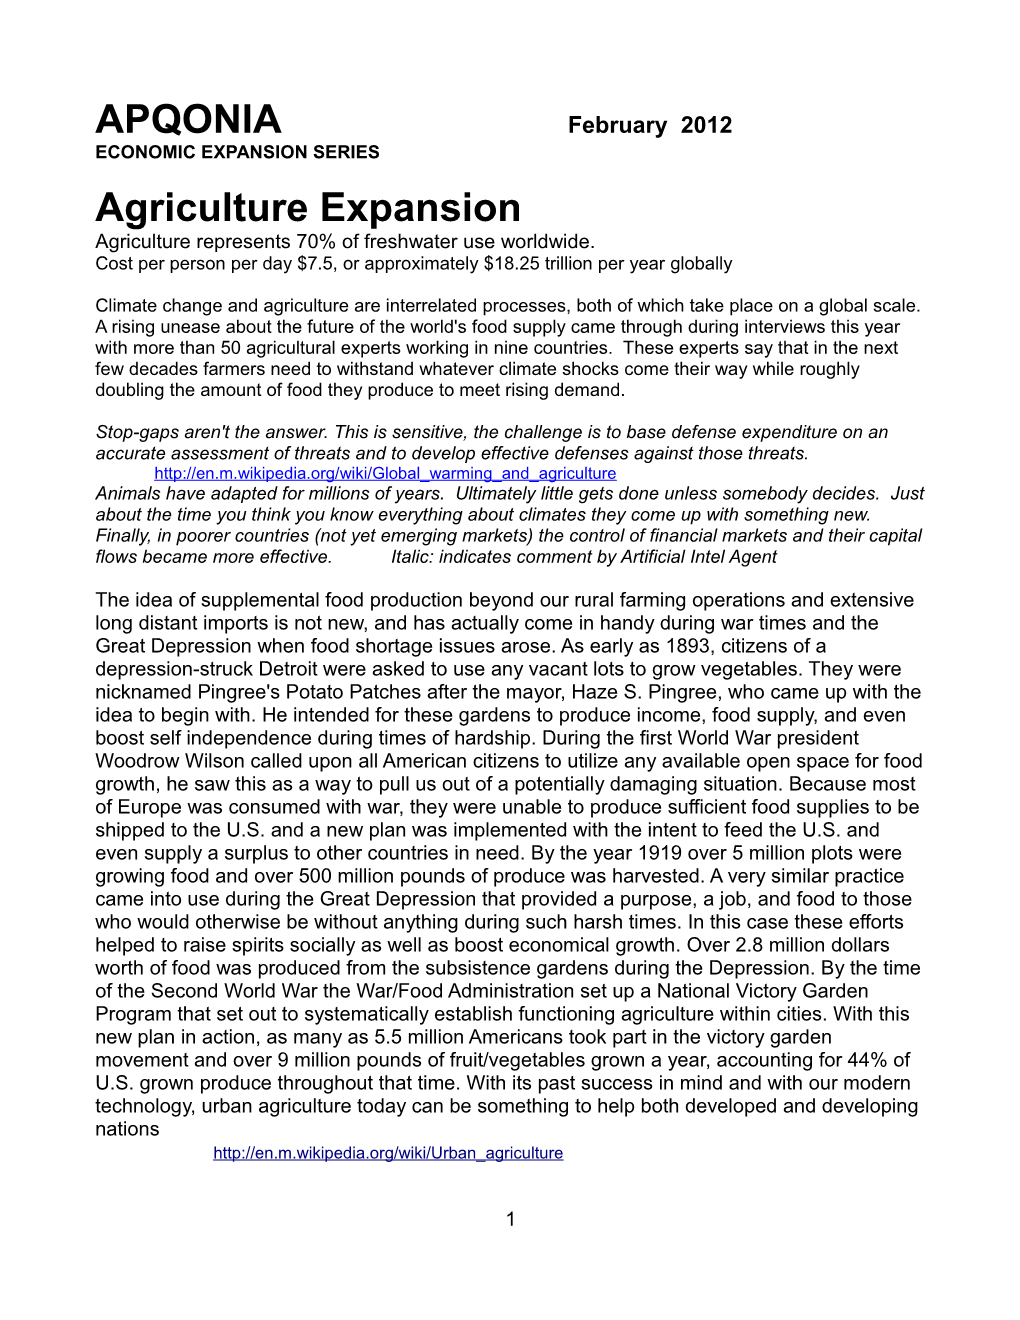 APQONIA Agriculture Expansion